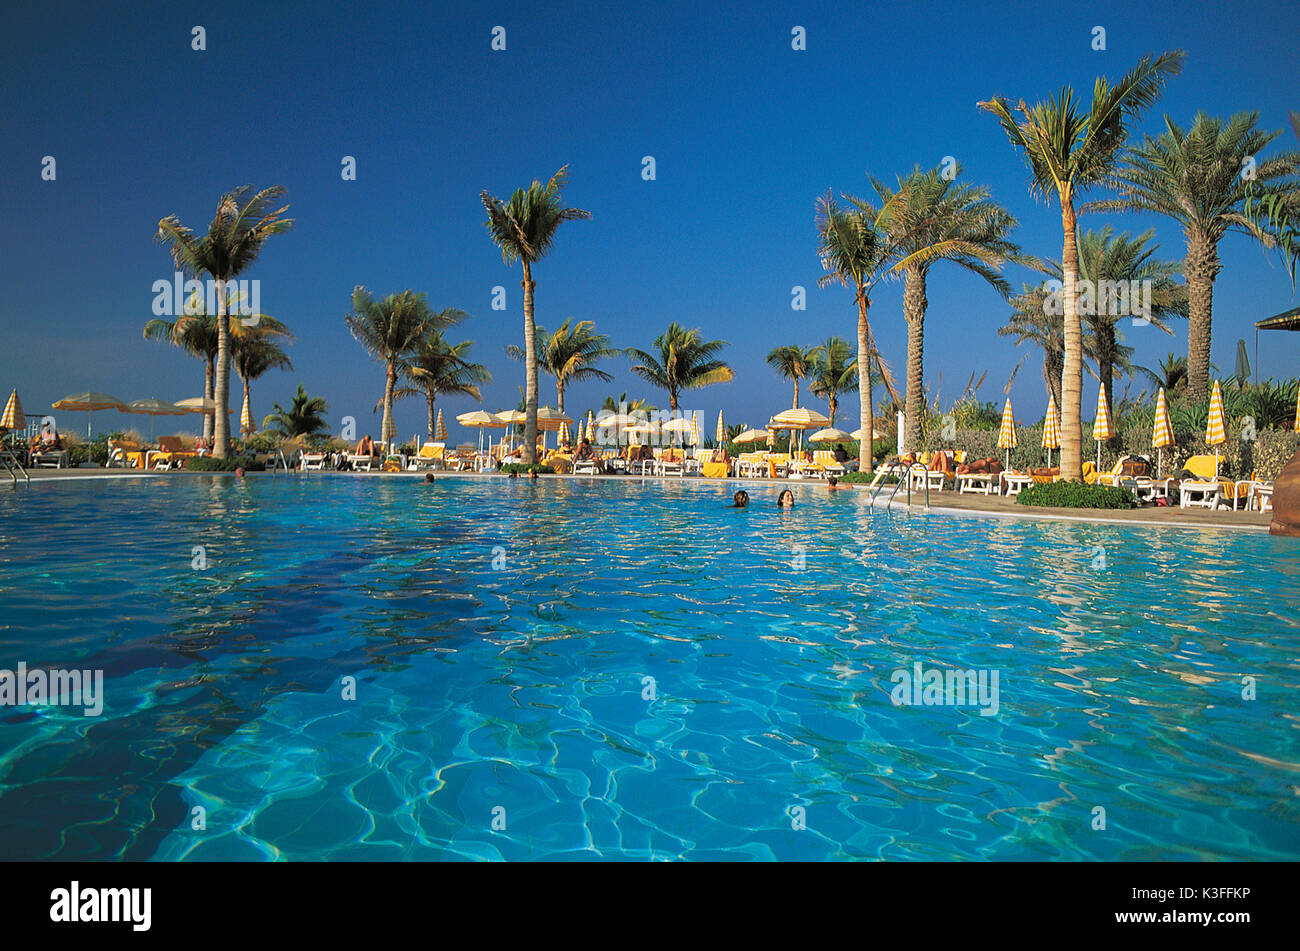 Piscina / pool di una vacanza's hotel vicino palmi Foto Stock